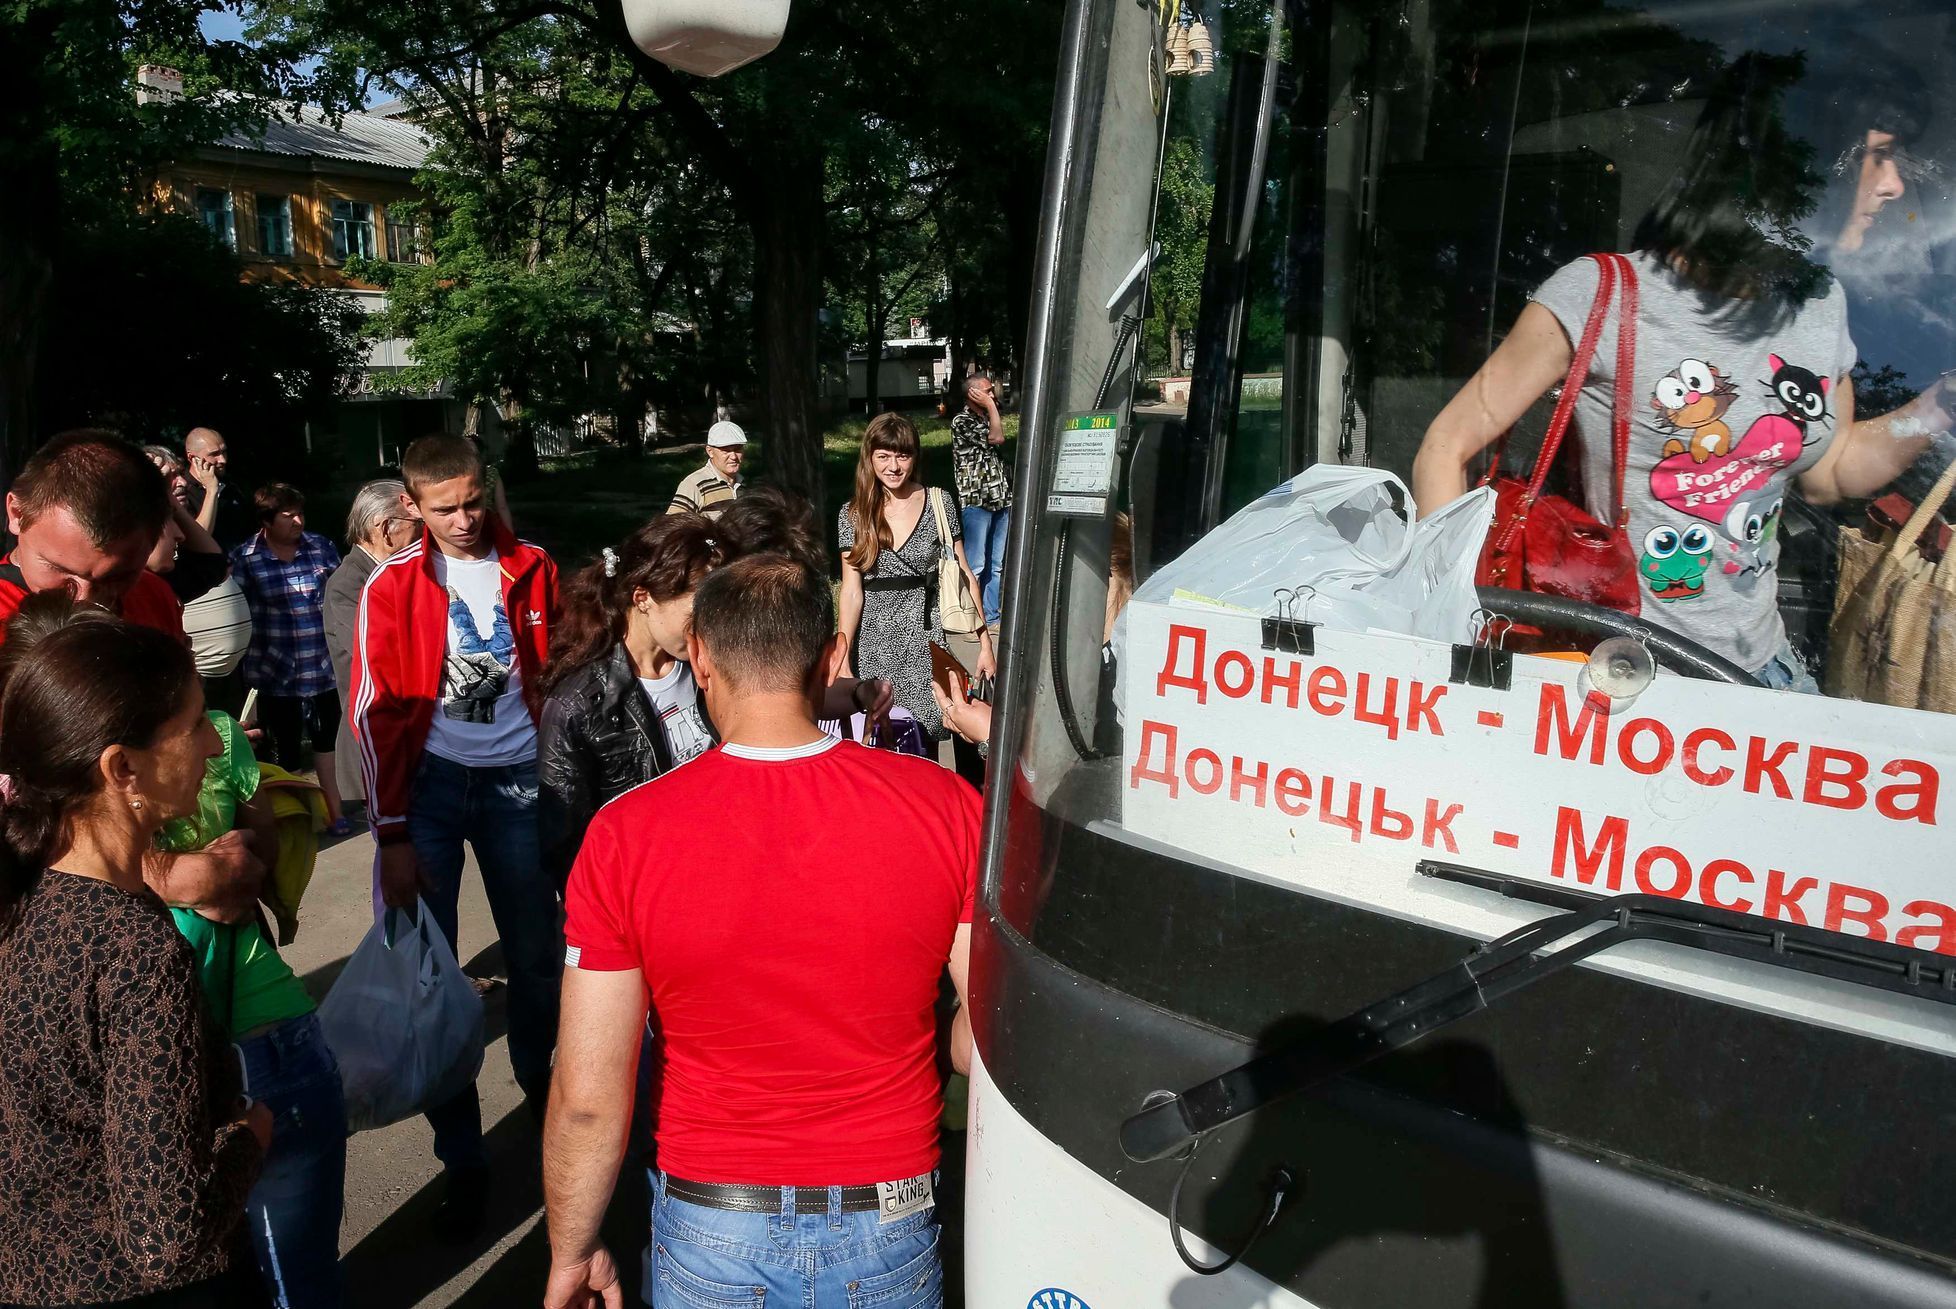 Ukrajina - Slavjansk - lidé prchají z města - autobus do Moskvy